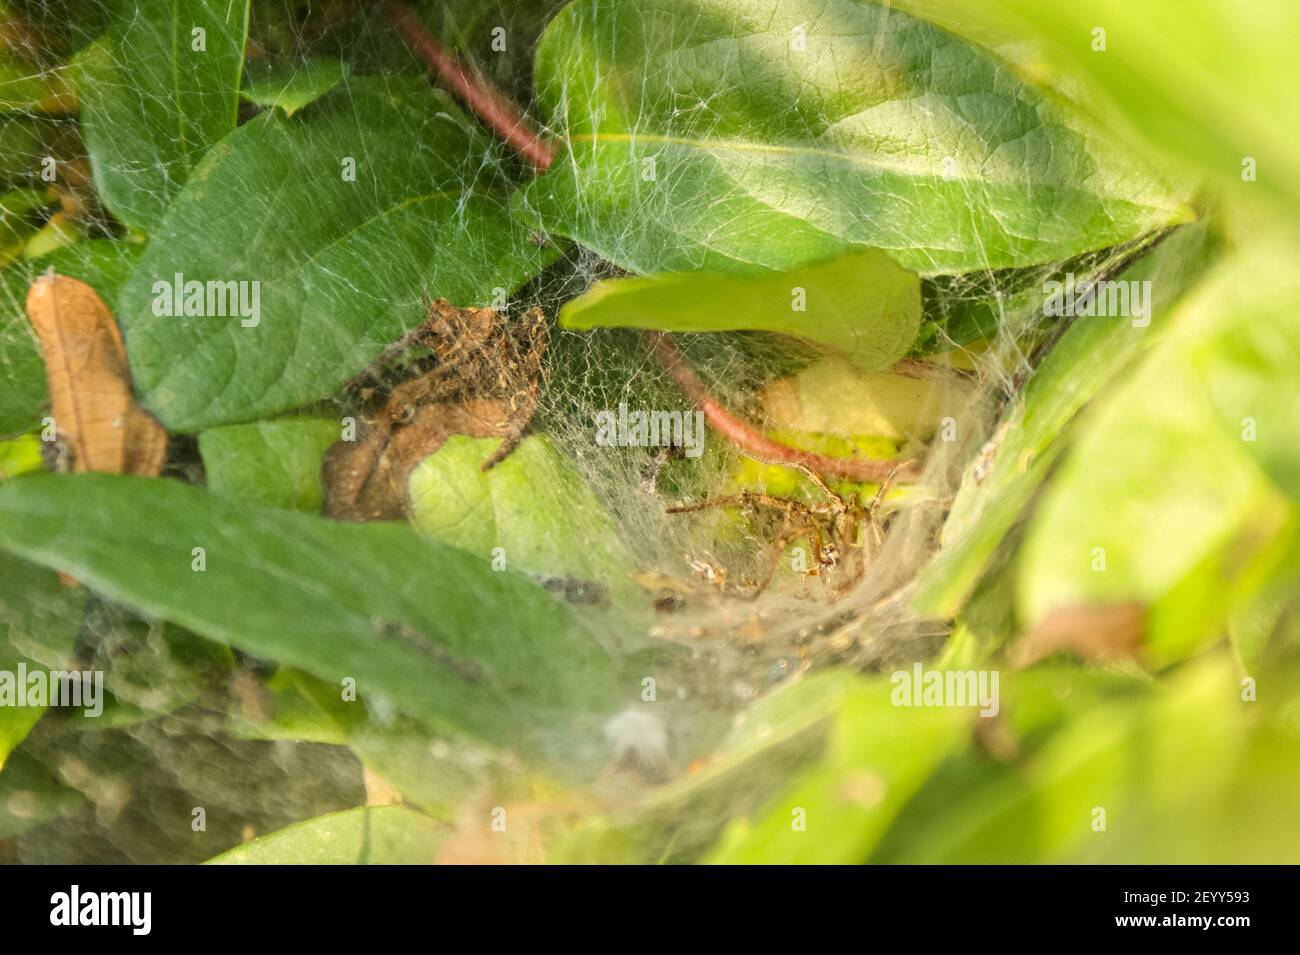 Una araña de hierba Agelenidae en la red de embudo entre las hojas en un jardín Foto de stock